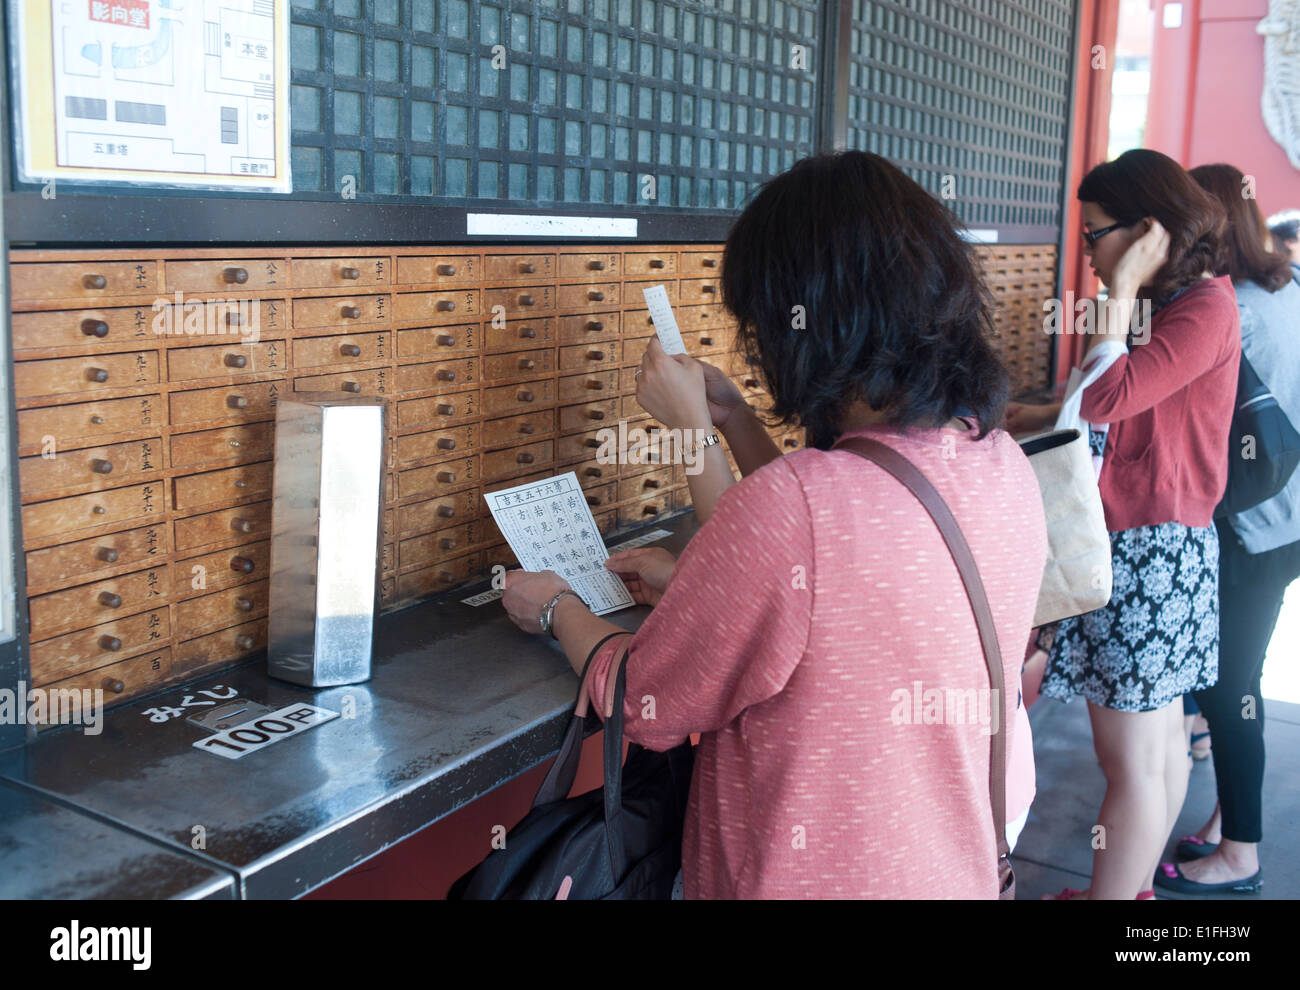 Tokyo Japan - Asakusa People take horoscope out of wooden drawer at Sanja Matsuri, Asakusa, Tokyo, Japan Stock Photo